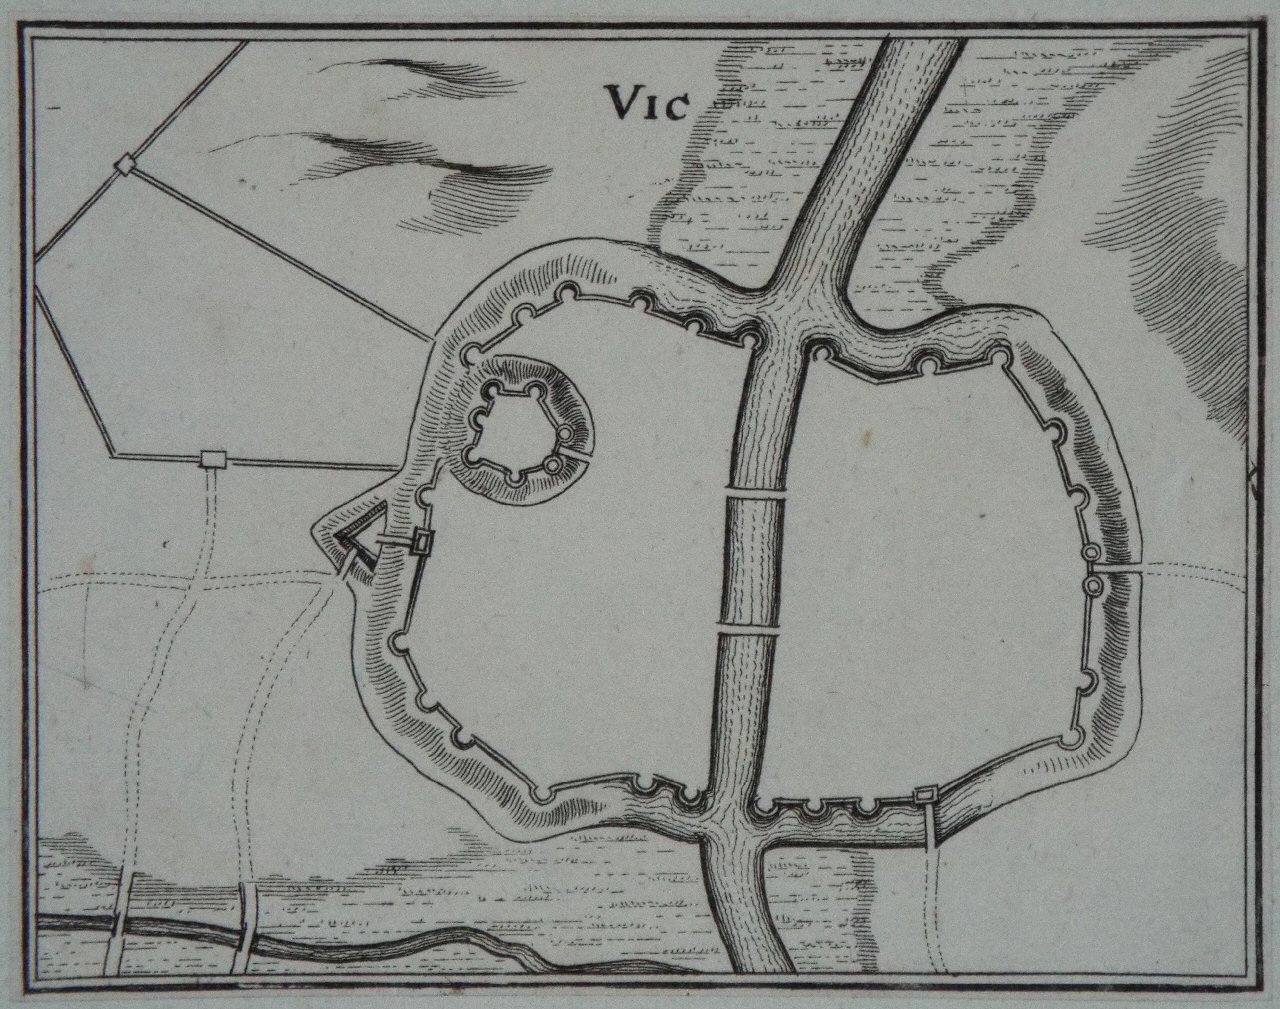 Map of Vic-sur-Seille - Vic-sur-Seille